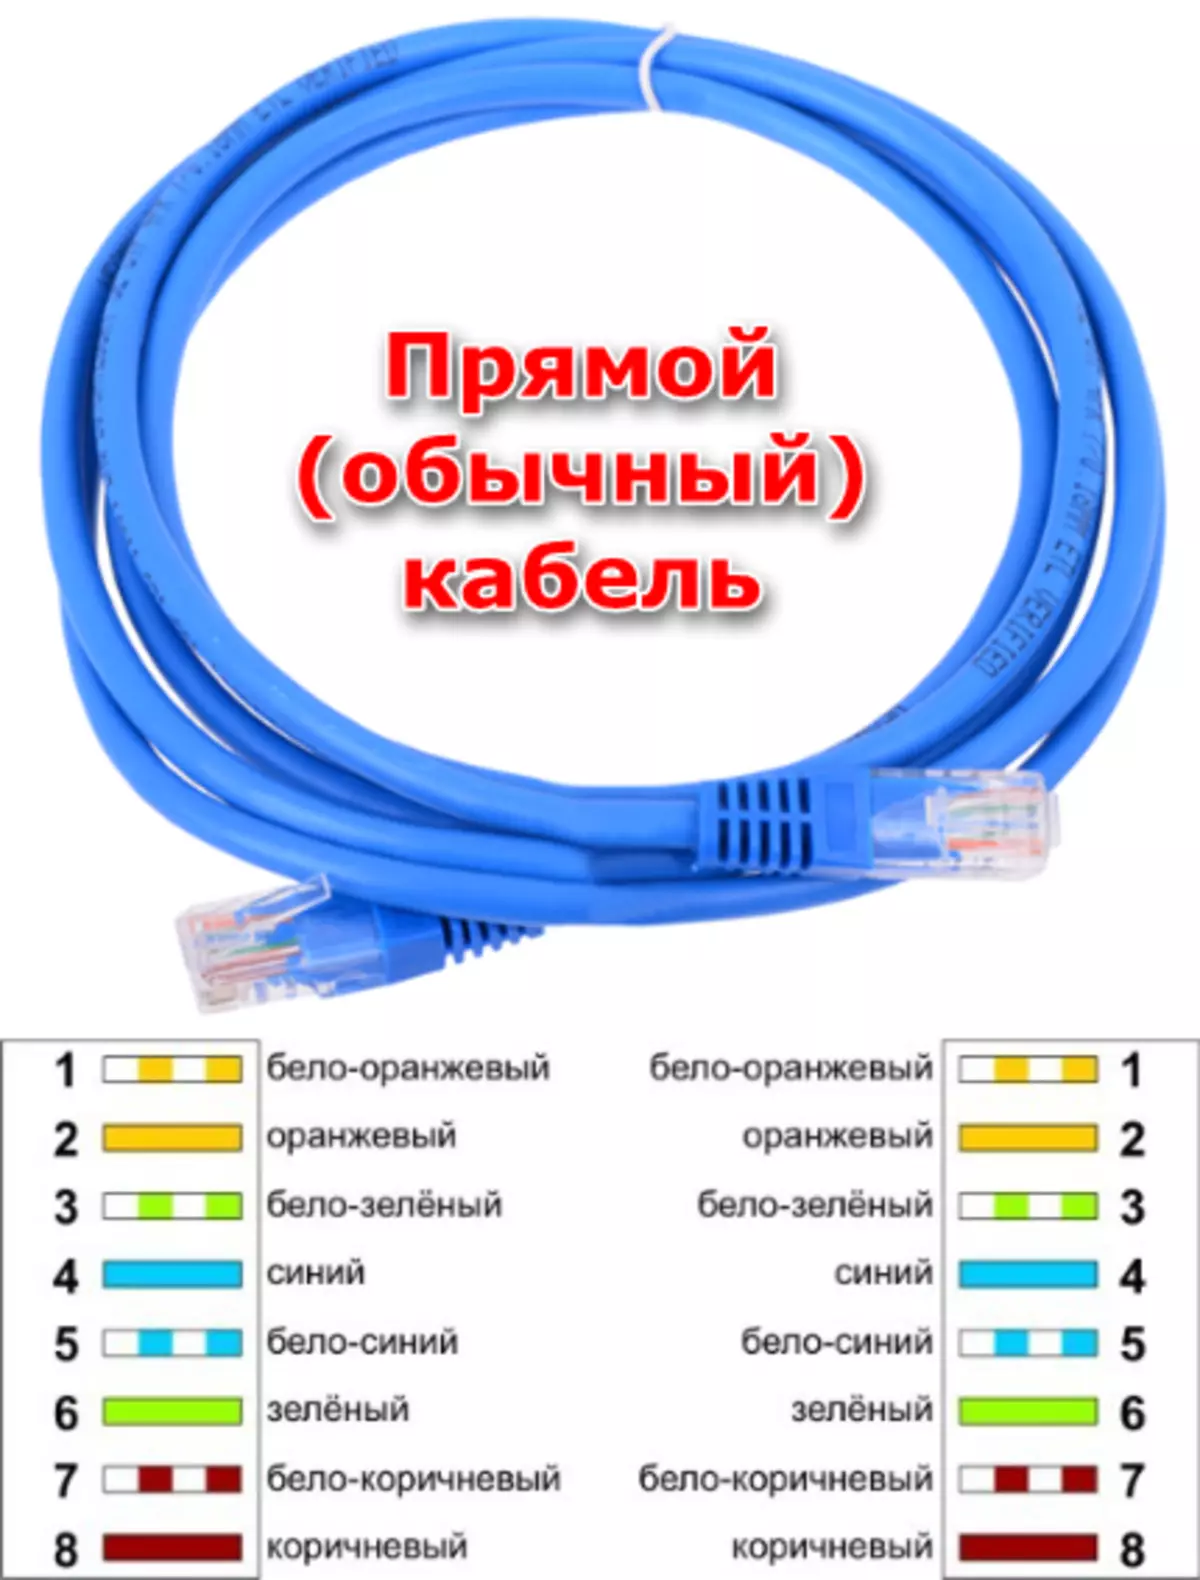 直接连接网络电缆创建本地网络